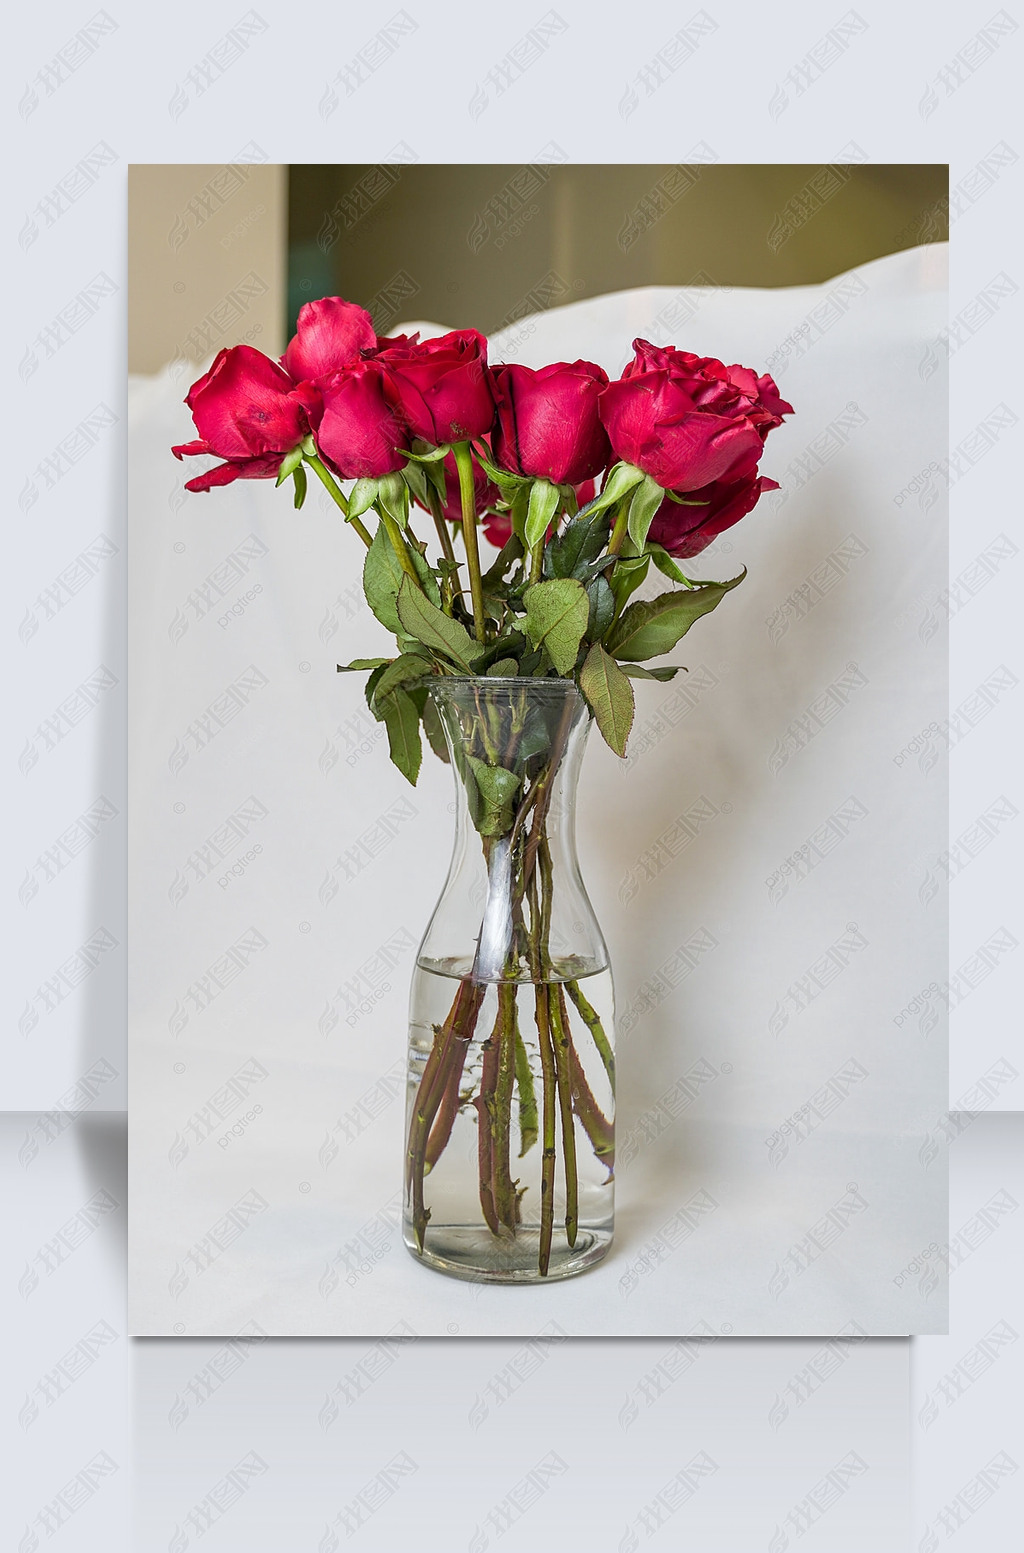 原创花瓶中的娇艳玫瑰花摄影图版权可商用